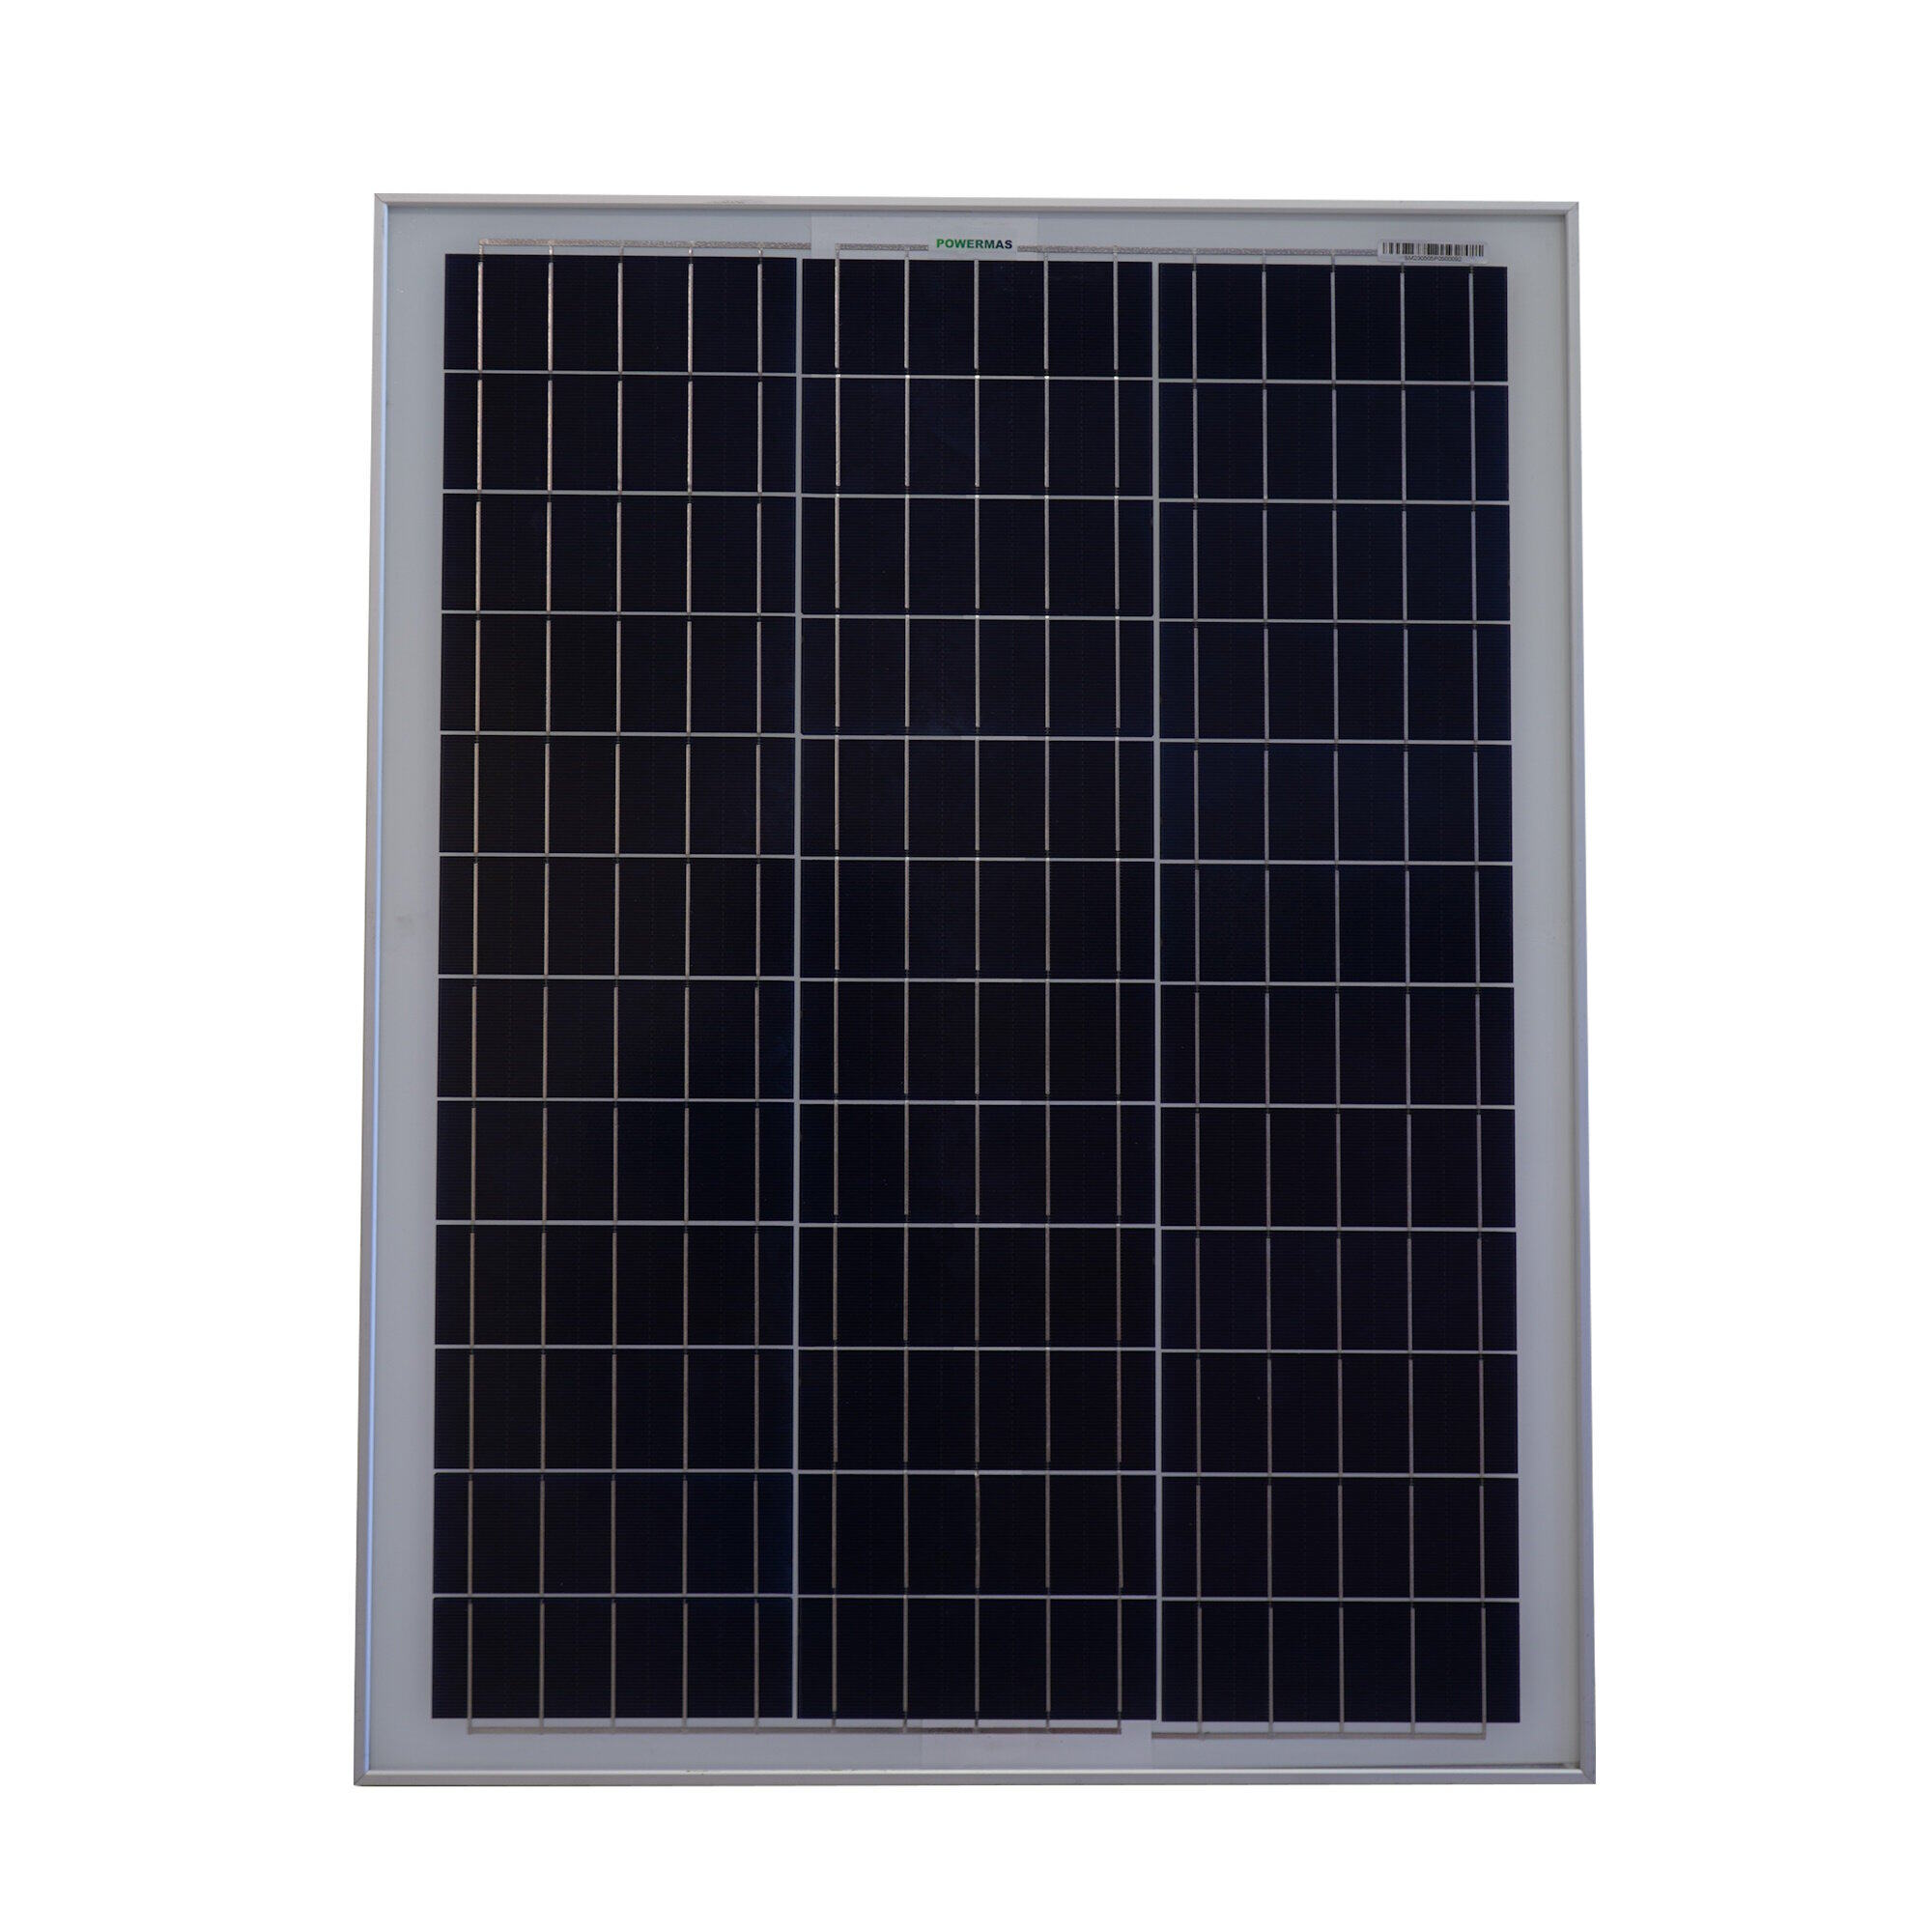 POWERMAS 50 Watt / 50W Polycrystalline A-Grade Solar Panel Vmp 18V Imp 2.78A